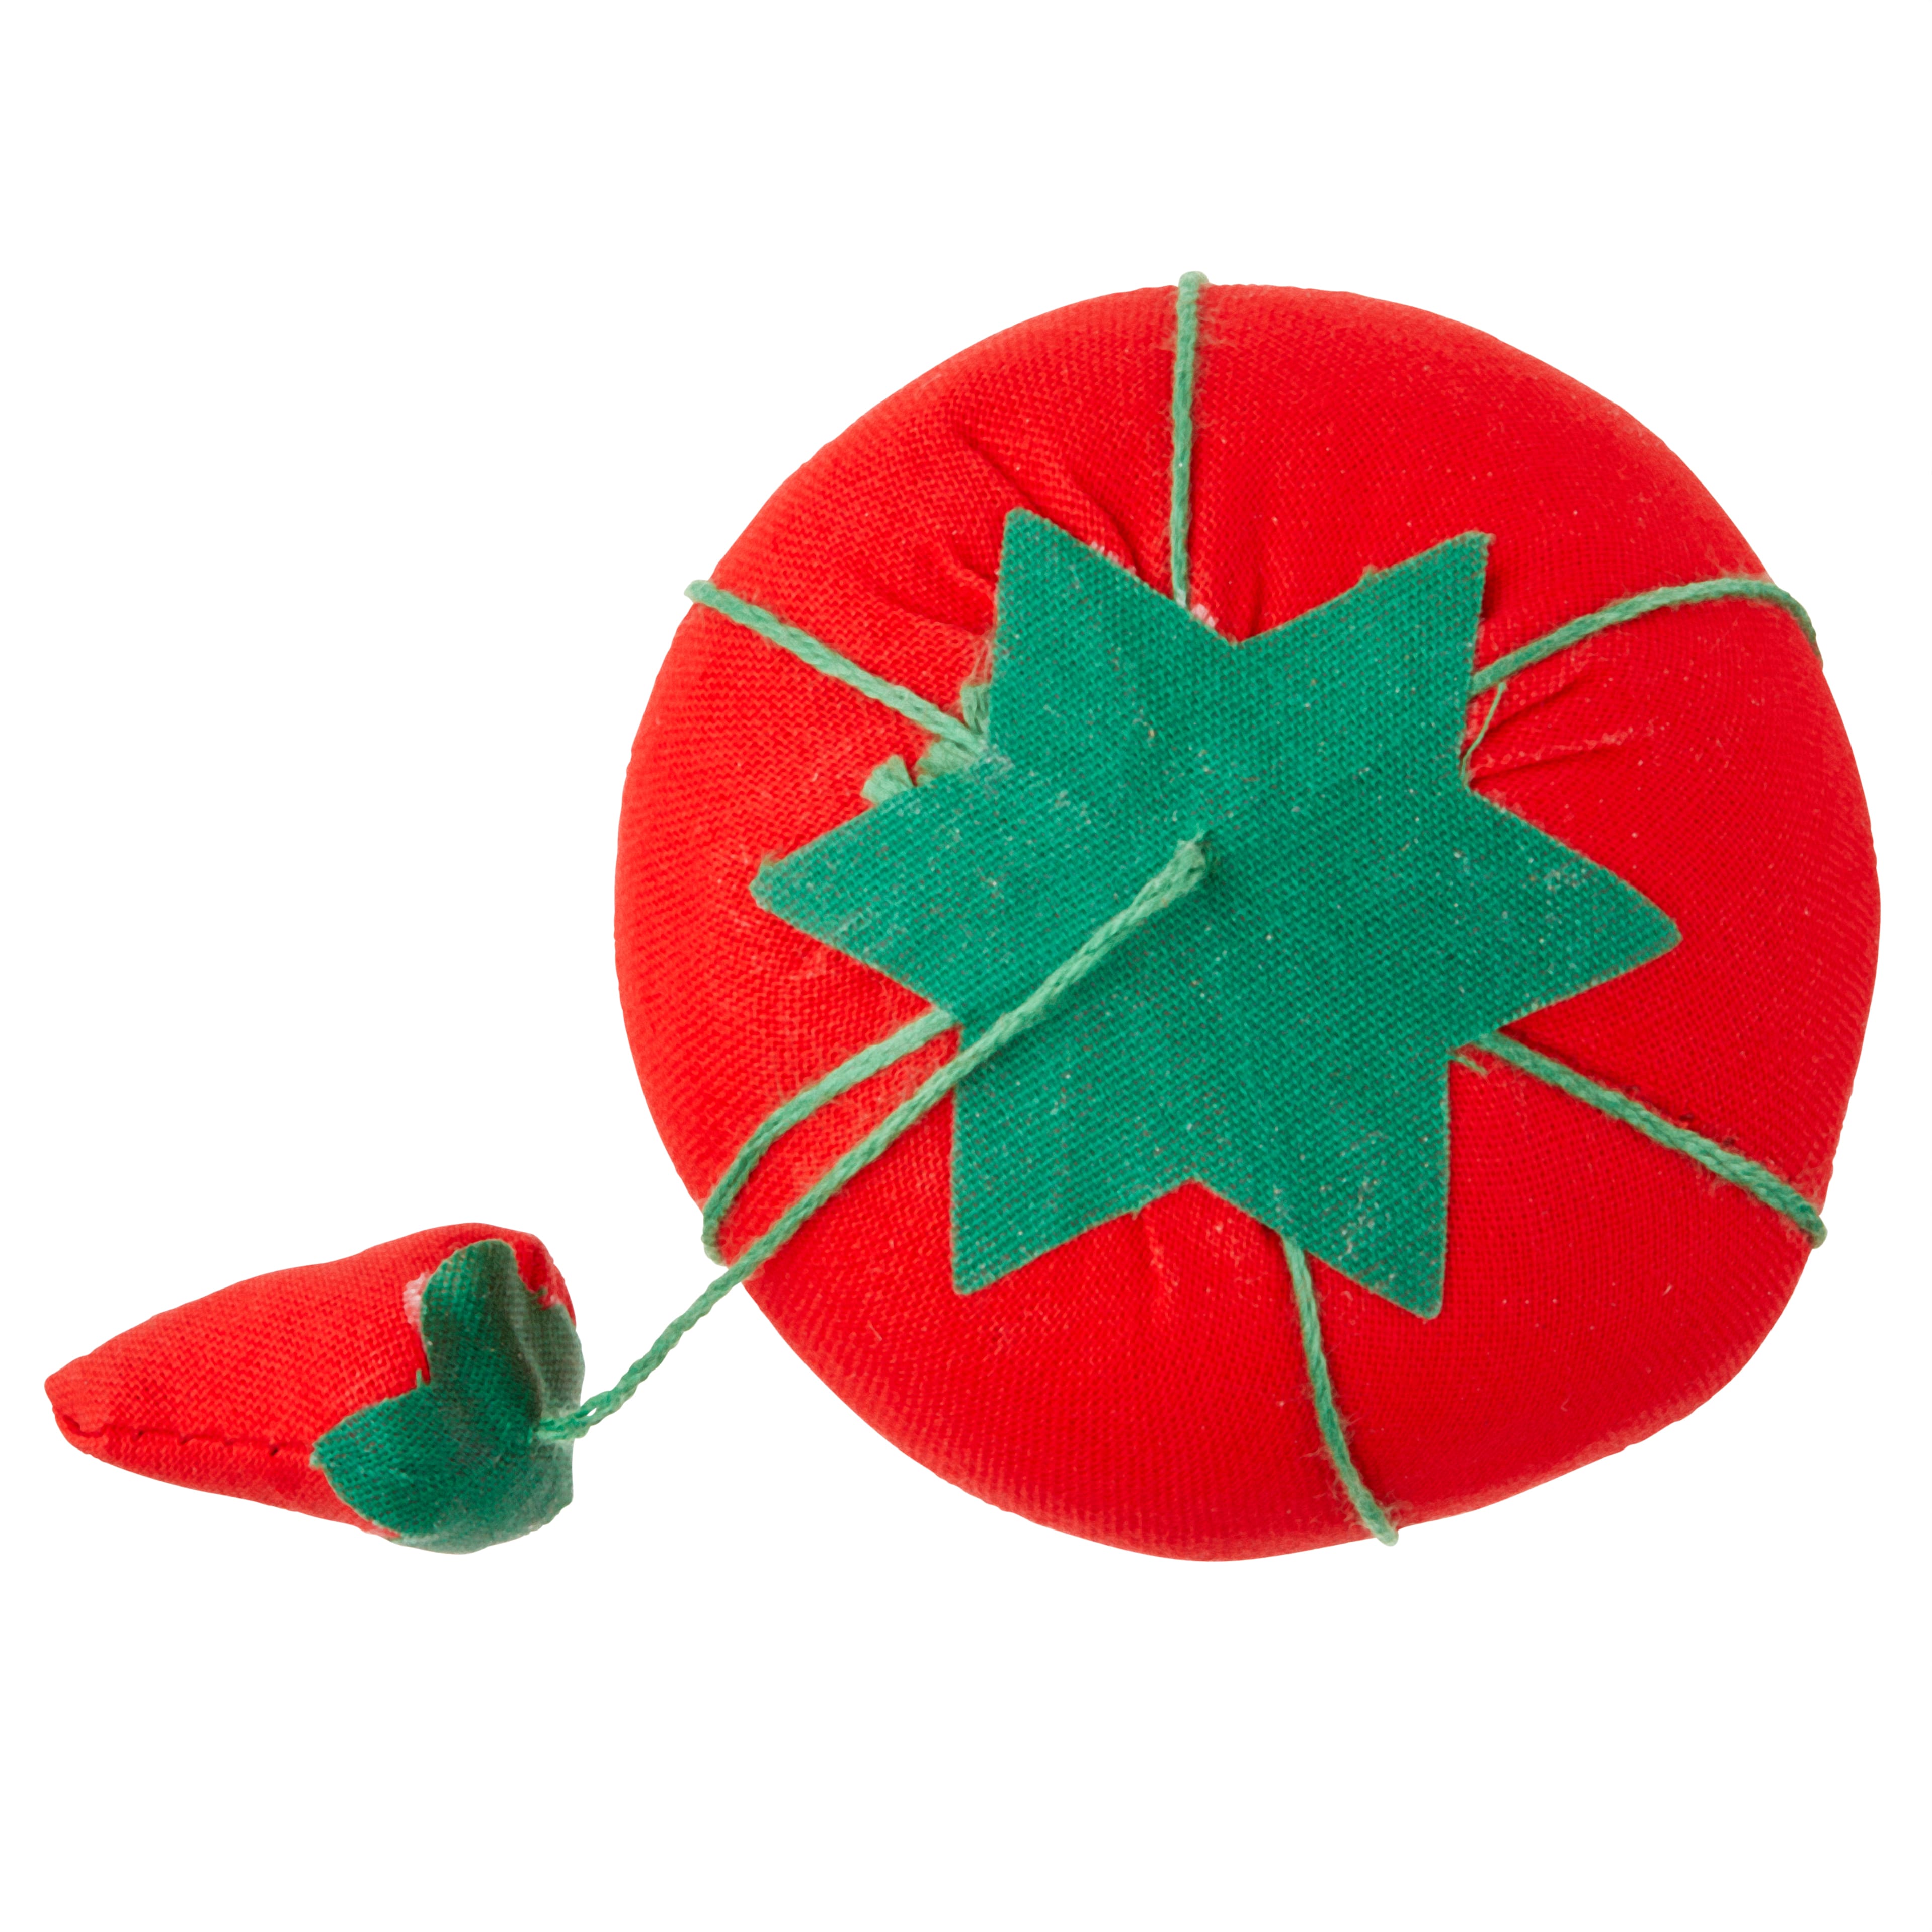 Prym Tomato Pin Cushion With Needle Sharpener Sewing Needle -  Canada